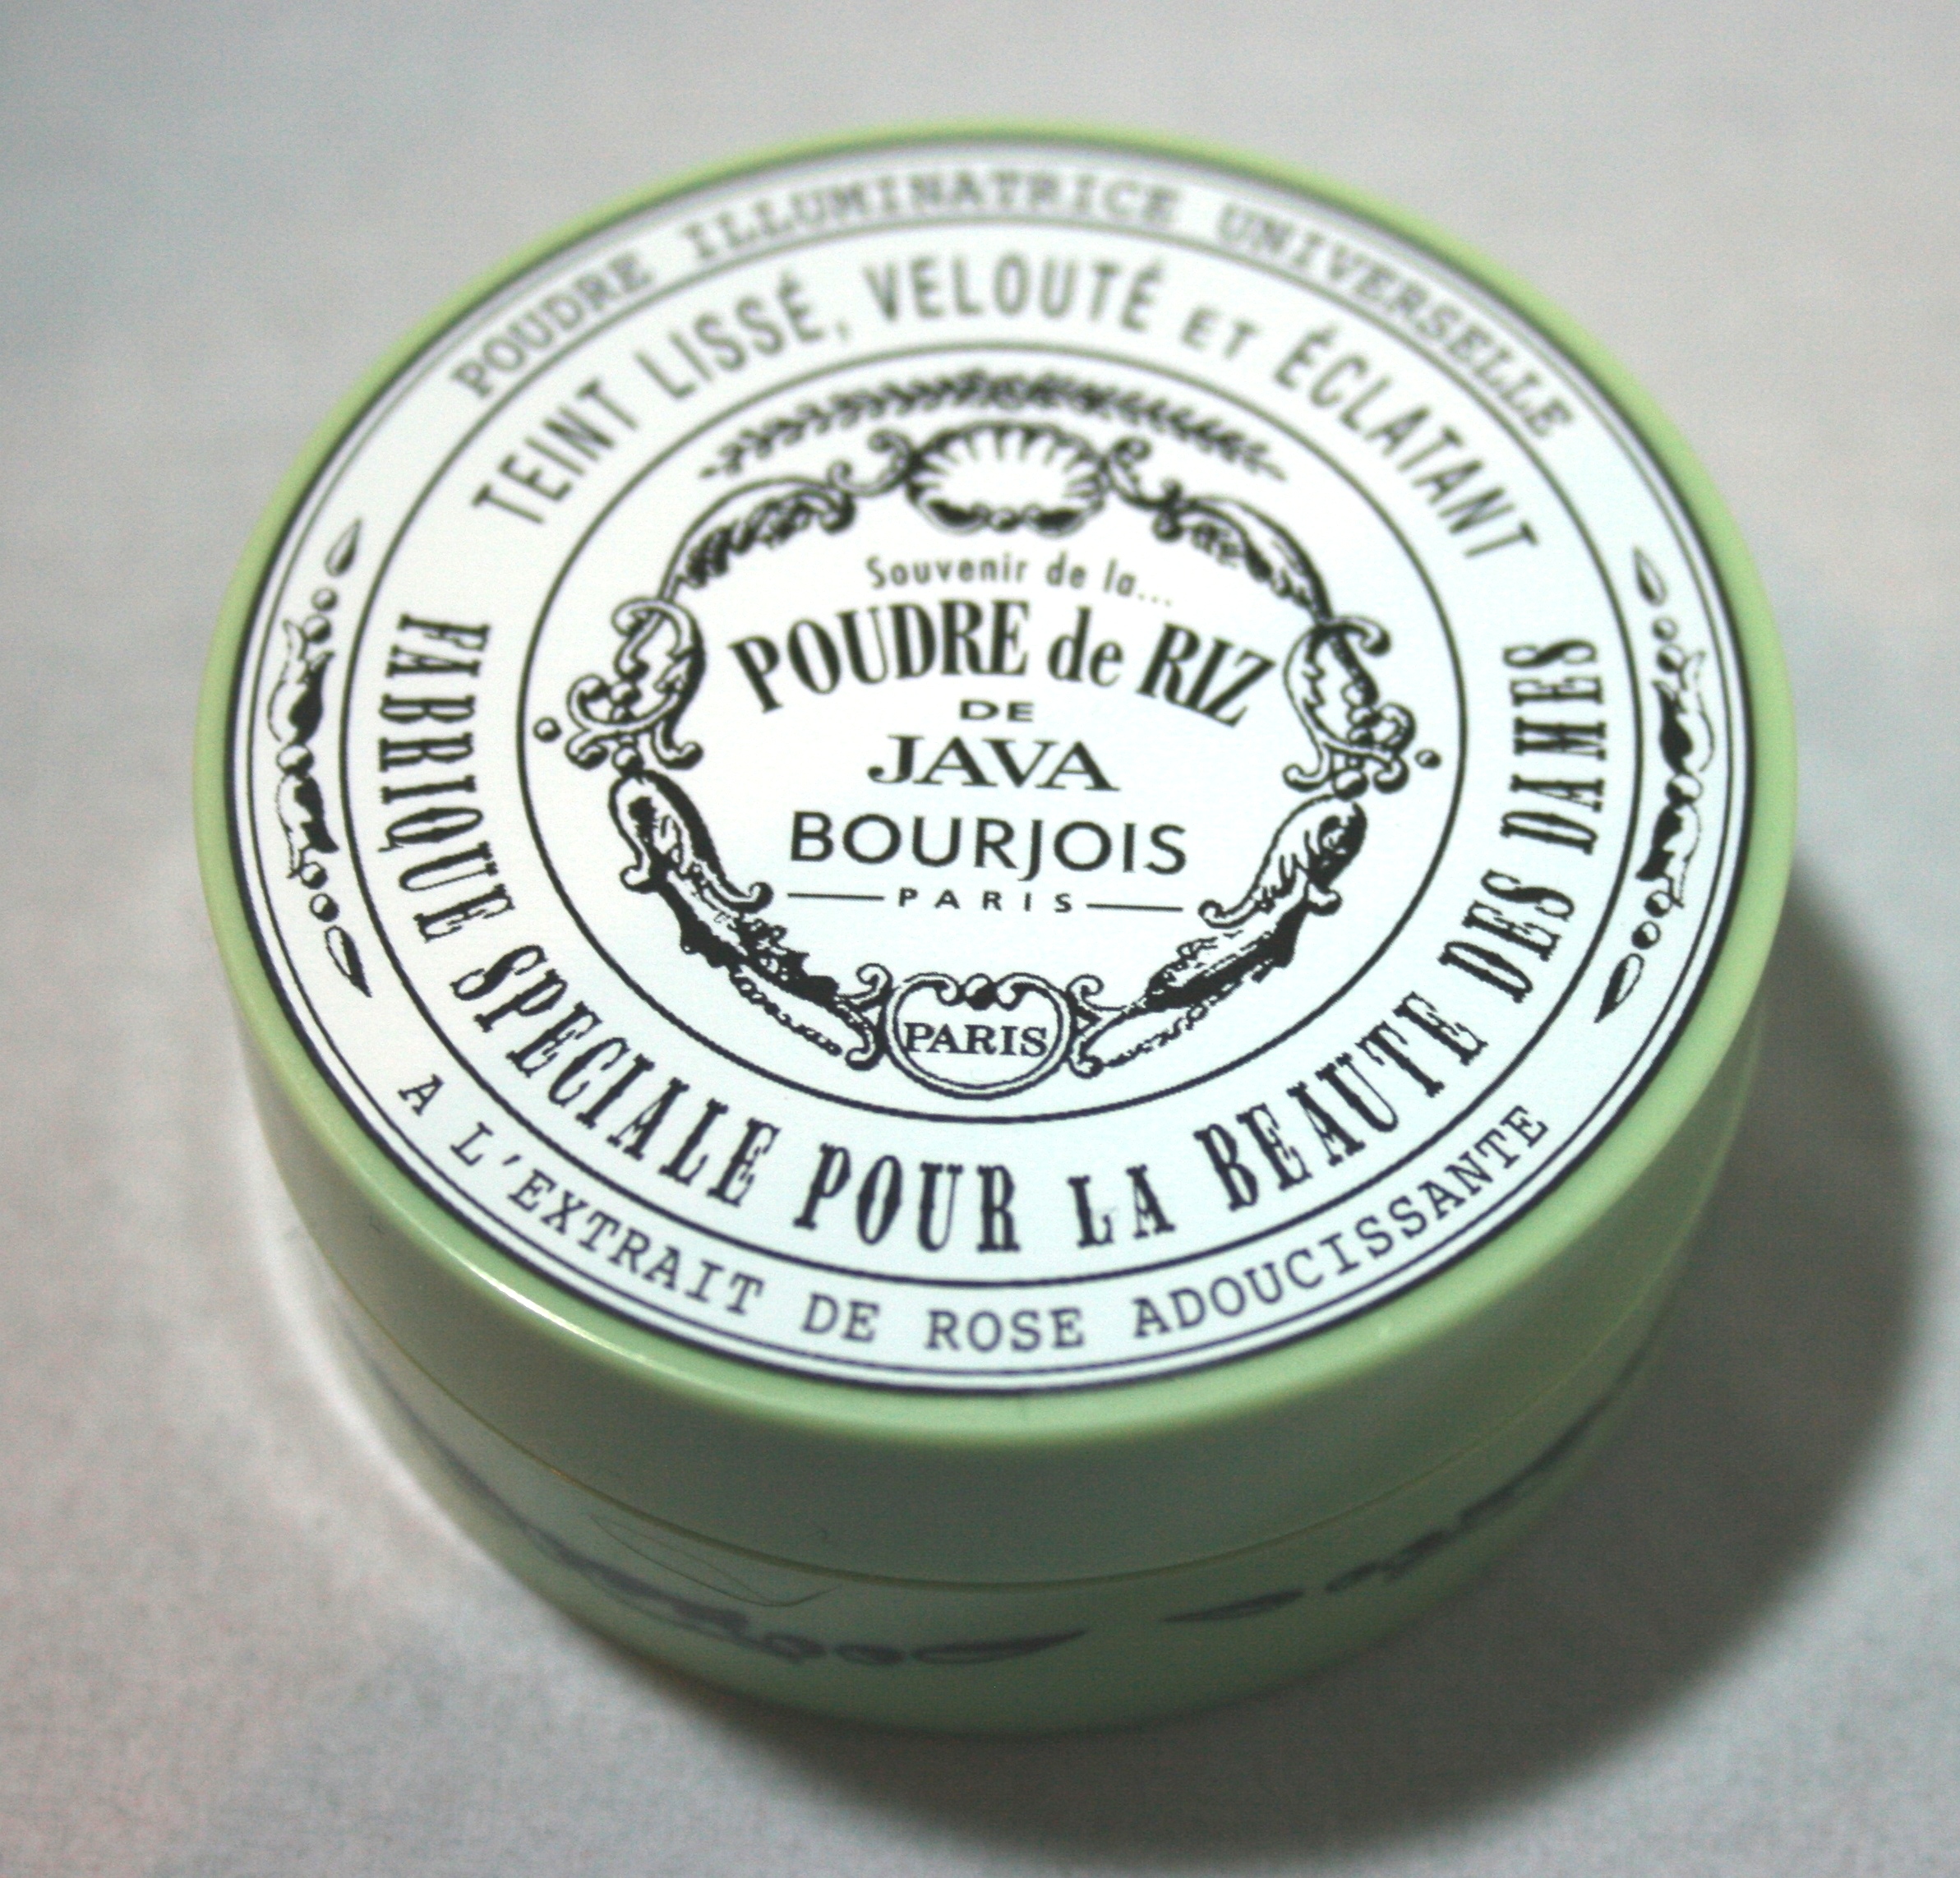 Bourjois Java Rice Powder